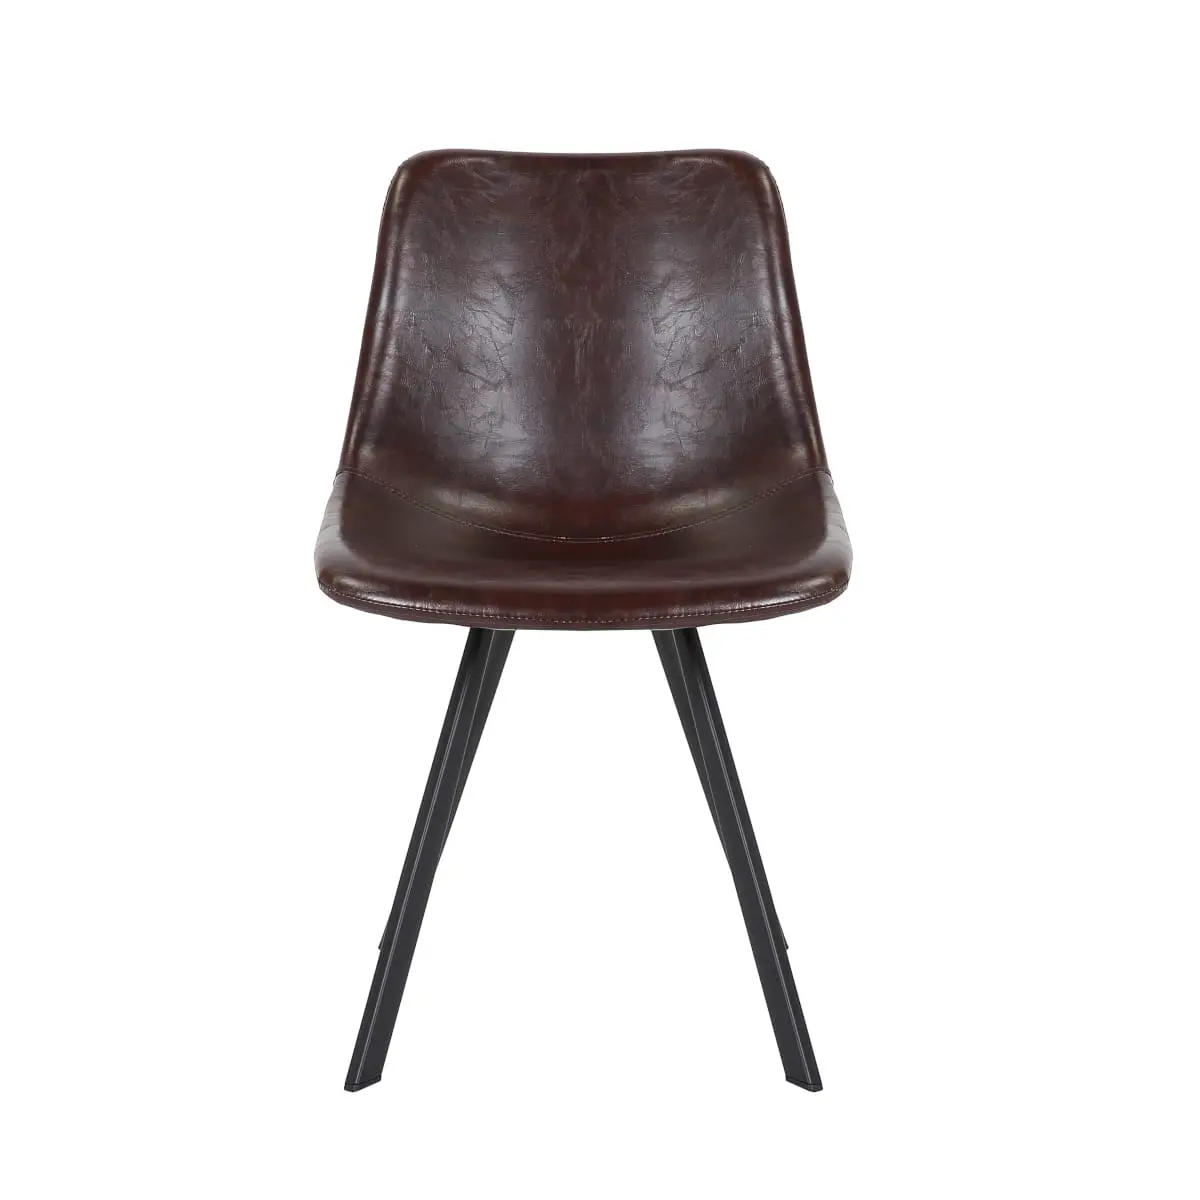 Stuhl Industrial Vintage Stil, braun gepolstert, Esszimmer-Stuhl, Gestell Metall schwarz matt